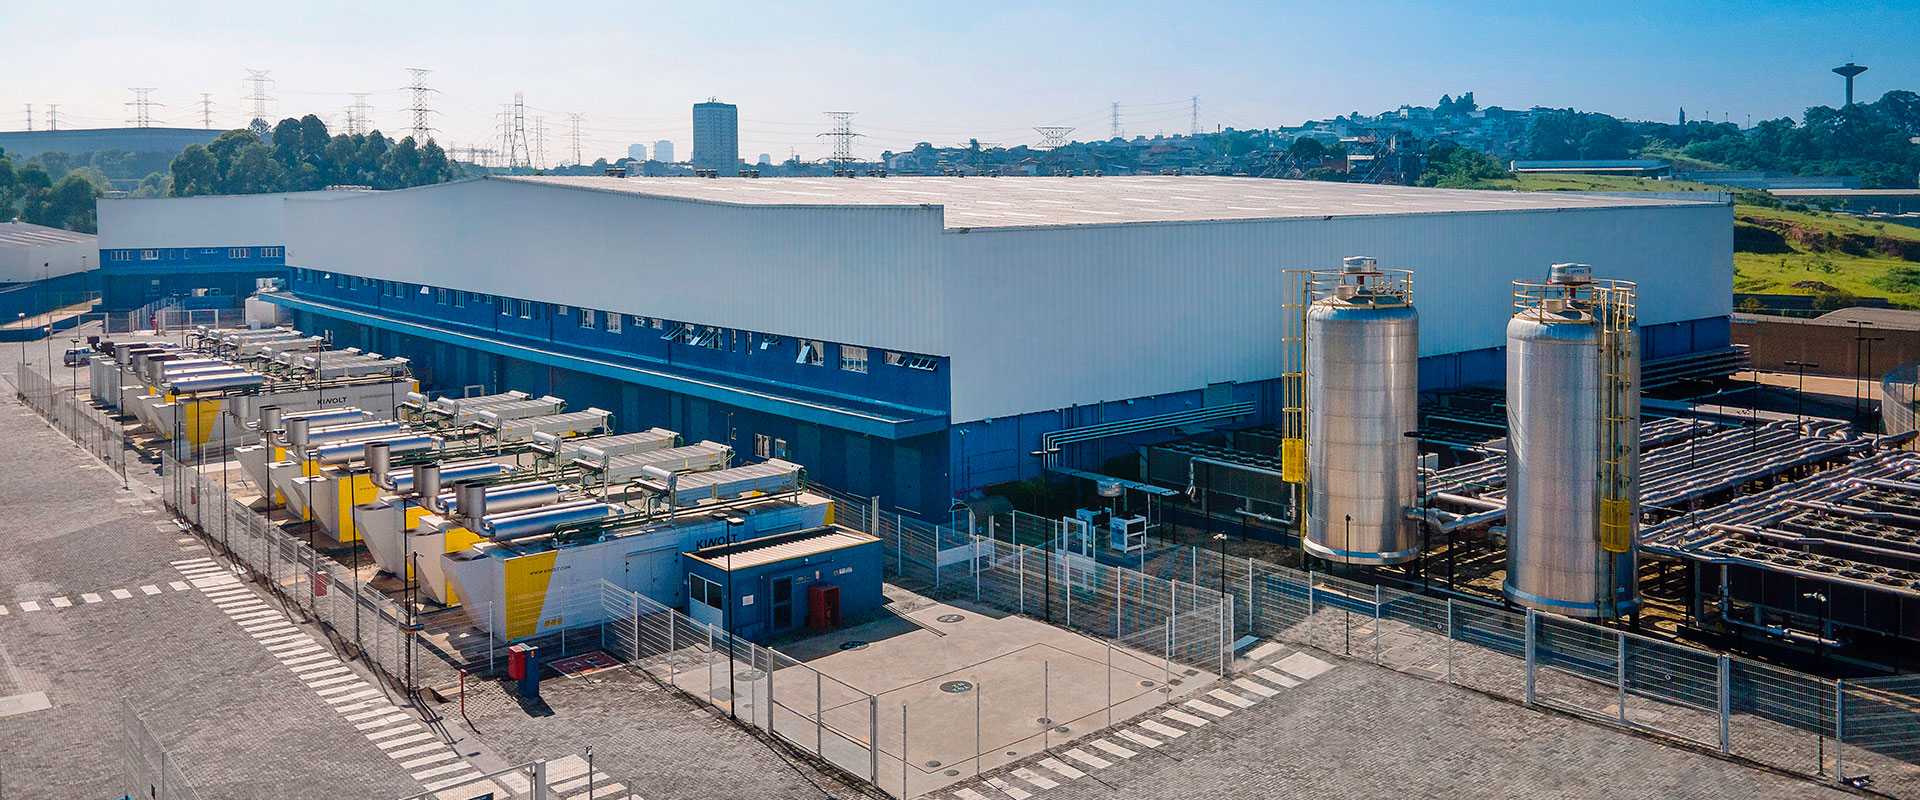 Ascenty inicia construção de quarto data center em São Paulo, o 28º da empresa